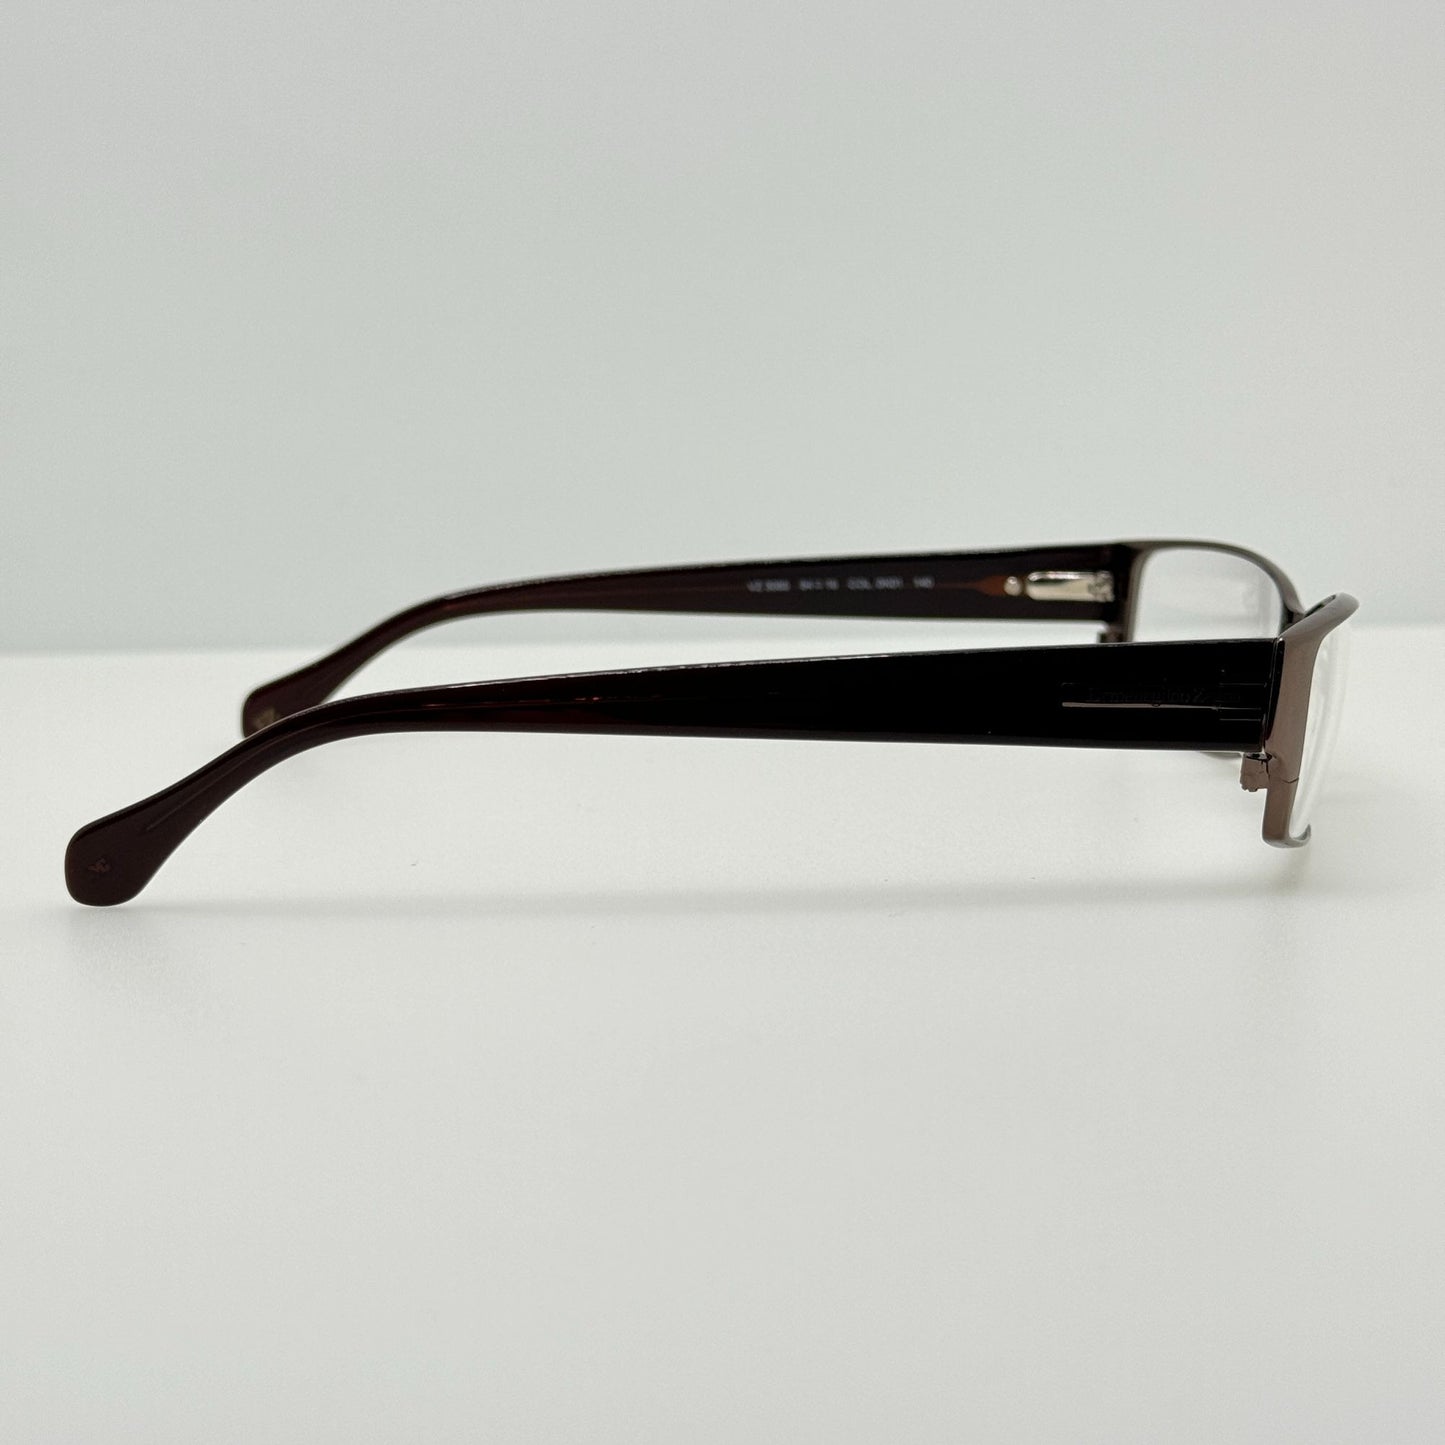 Ermenegildo Zegna Eyeglasses Eye Glasses Frames VZ 3085 0K01 54-16-140